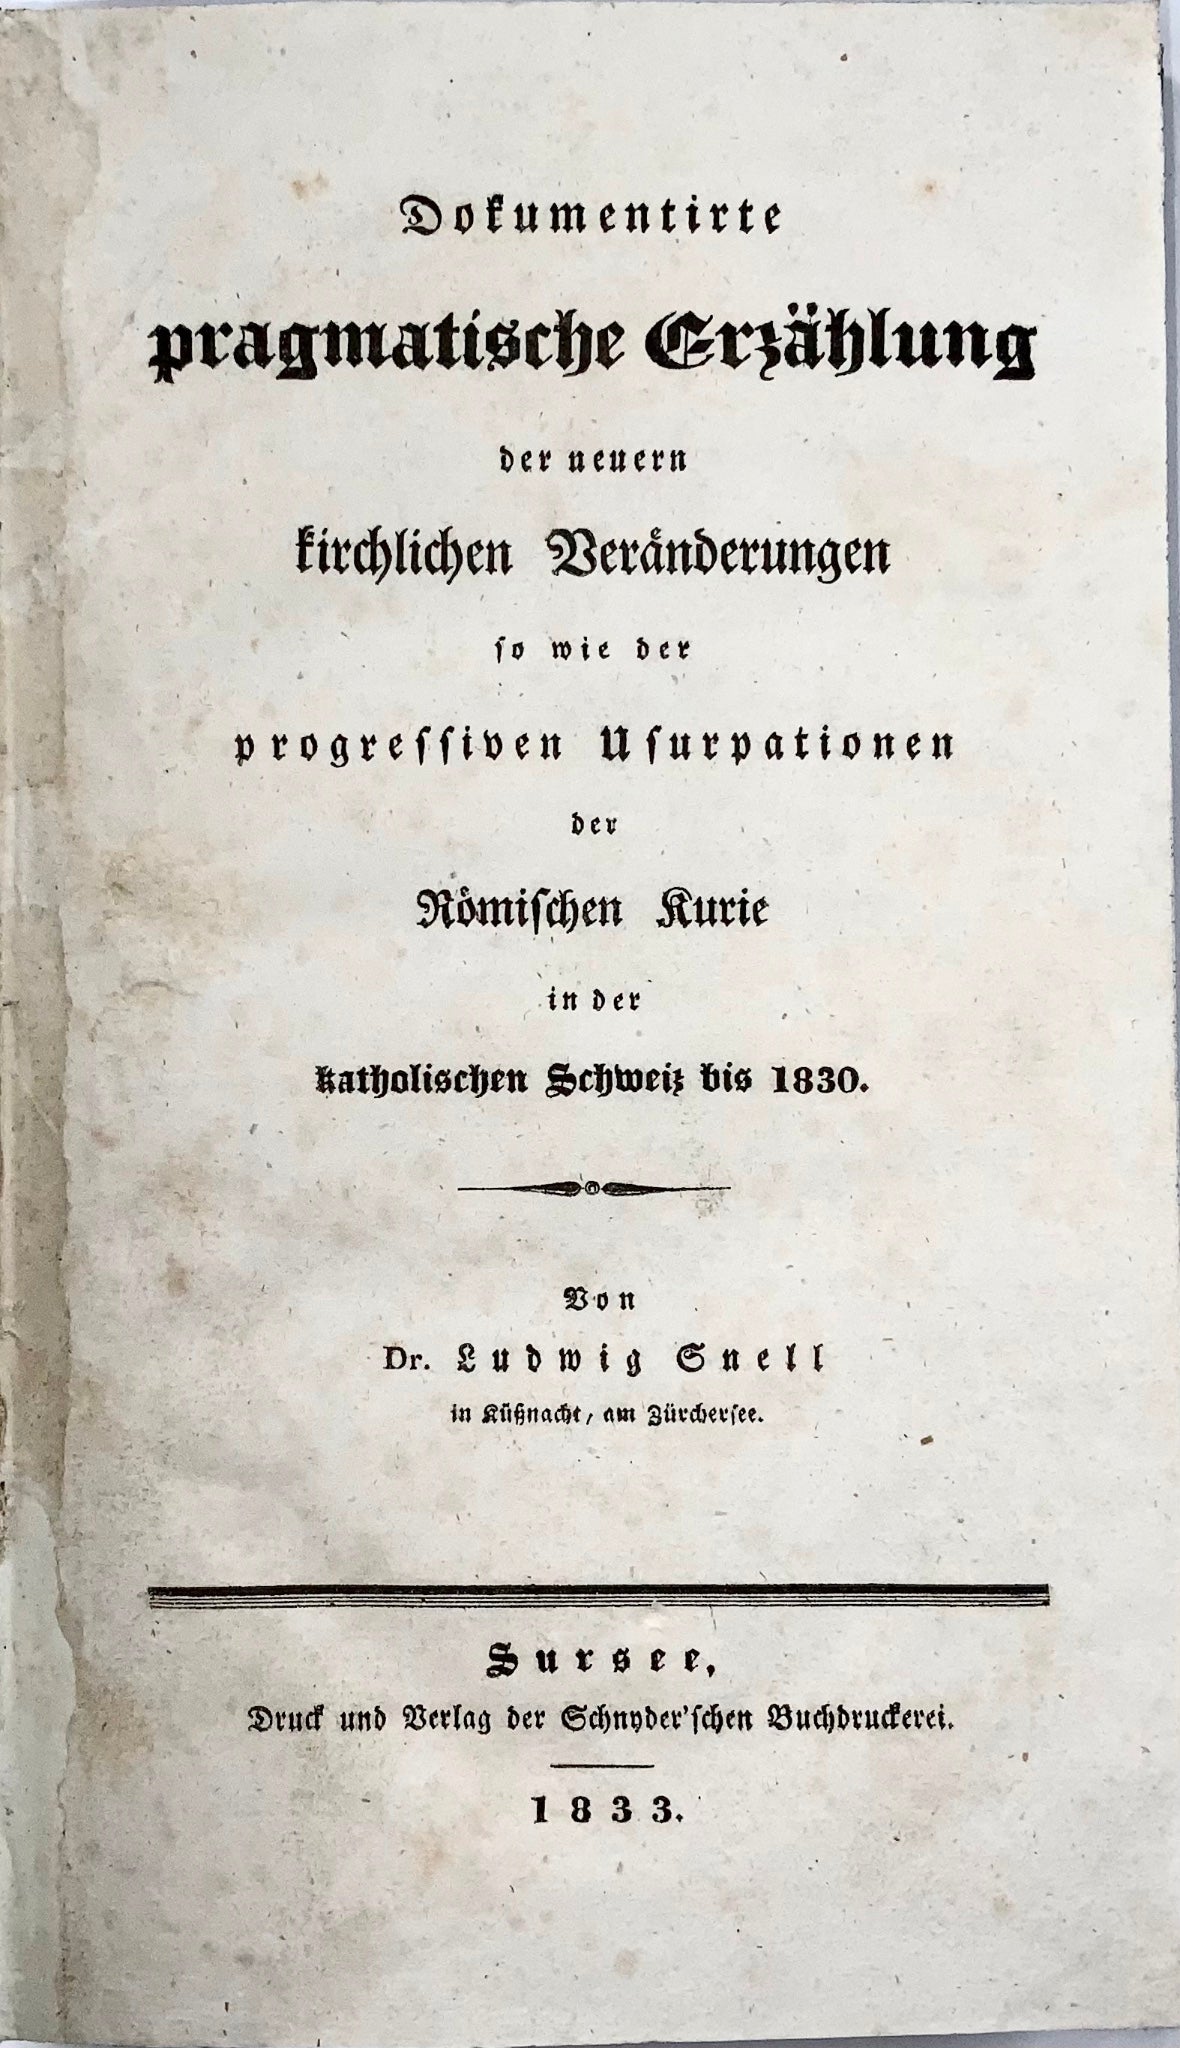 1833 Ludwig Snell, critico liberale radicale dei cattolici romani in Svizzera